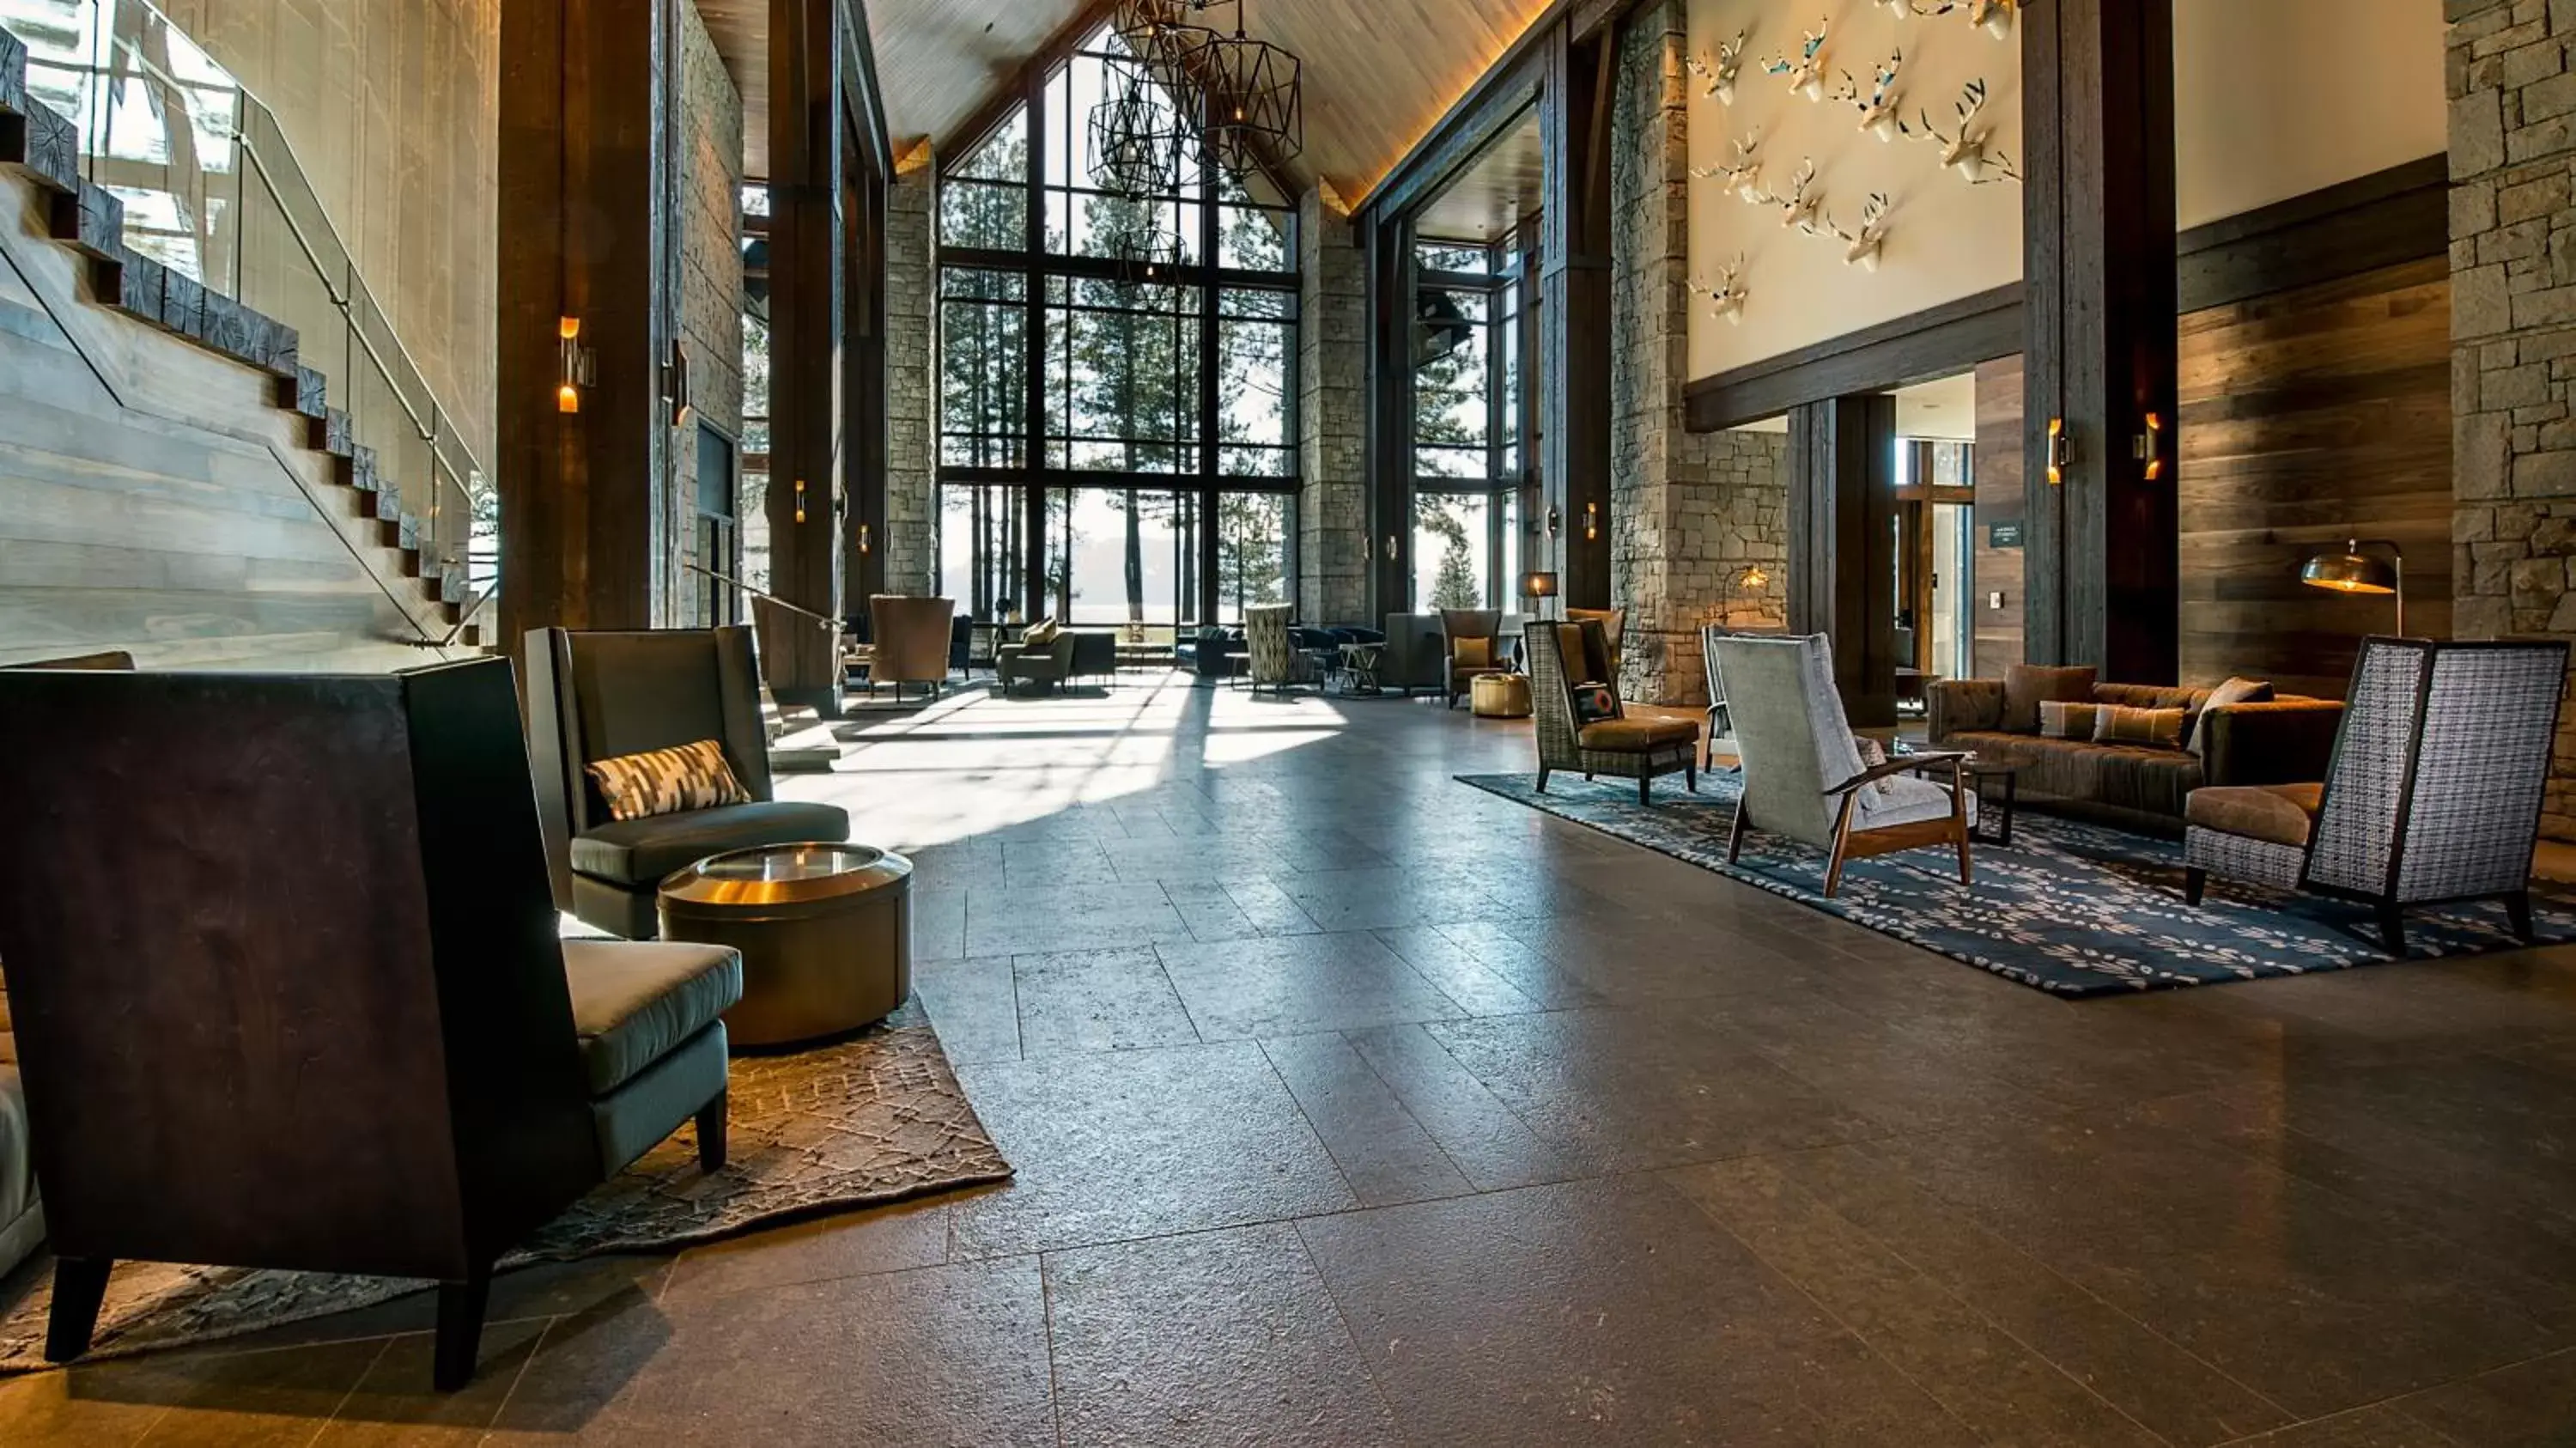 Lobby or reception in Edgewood Tahoe Resort